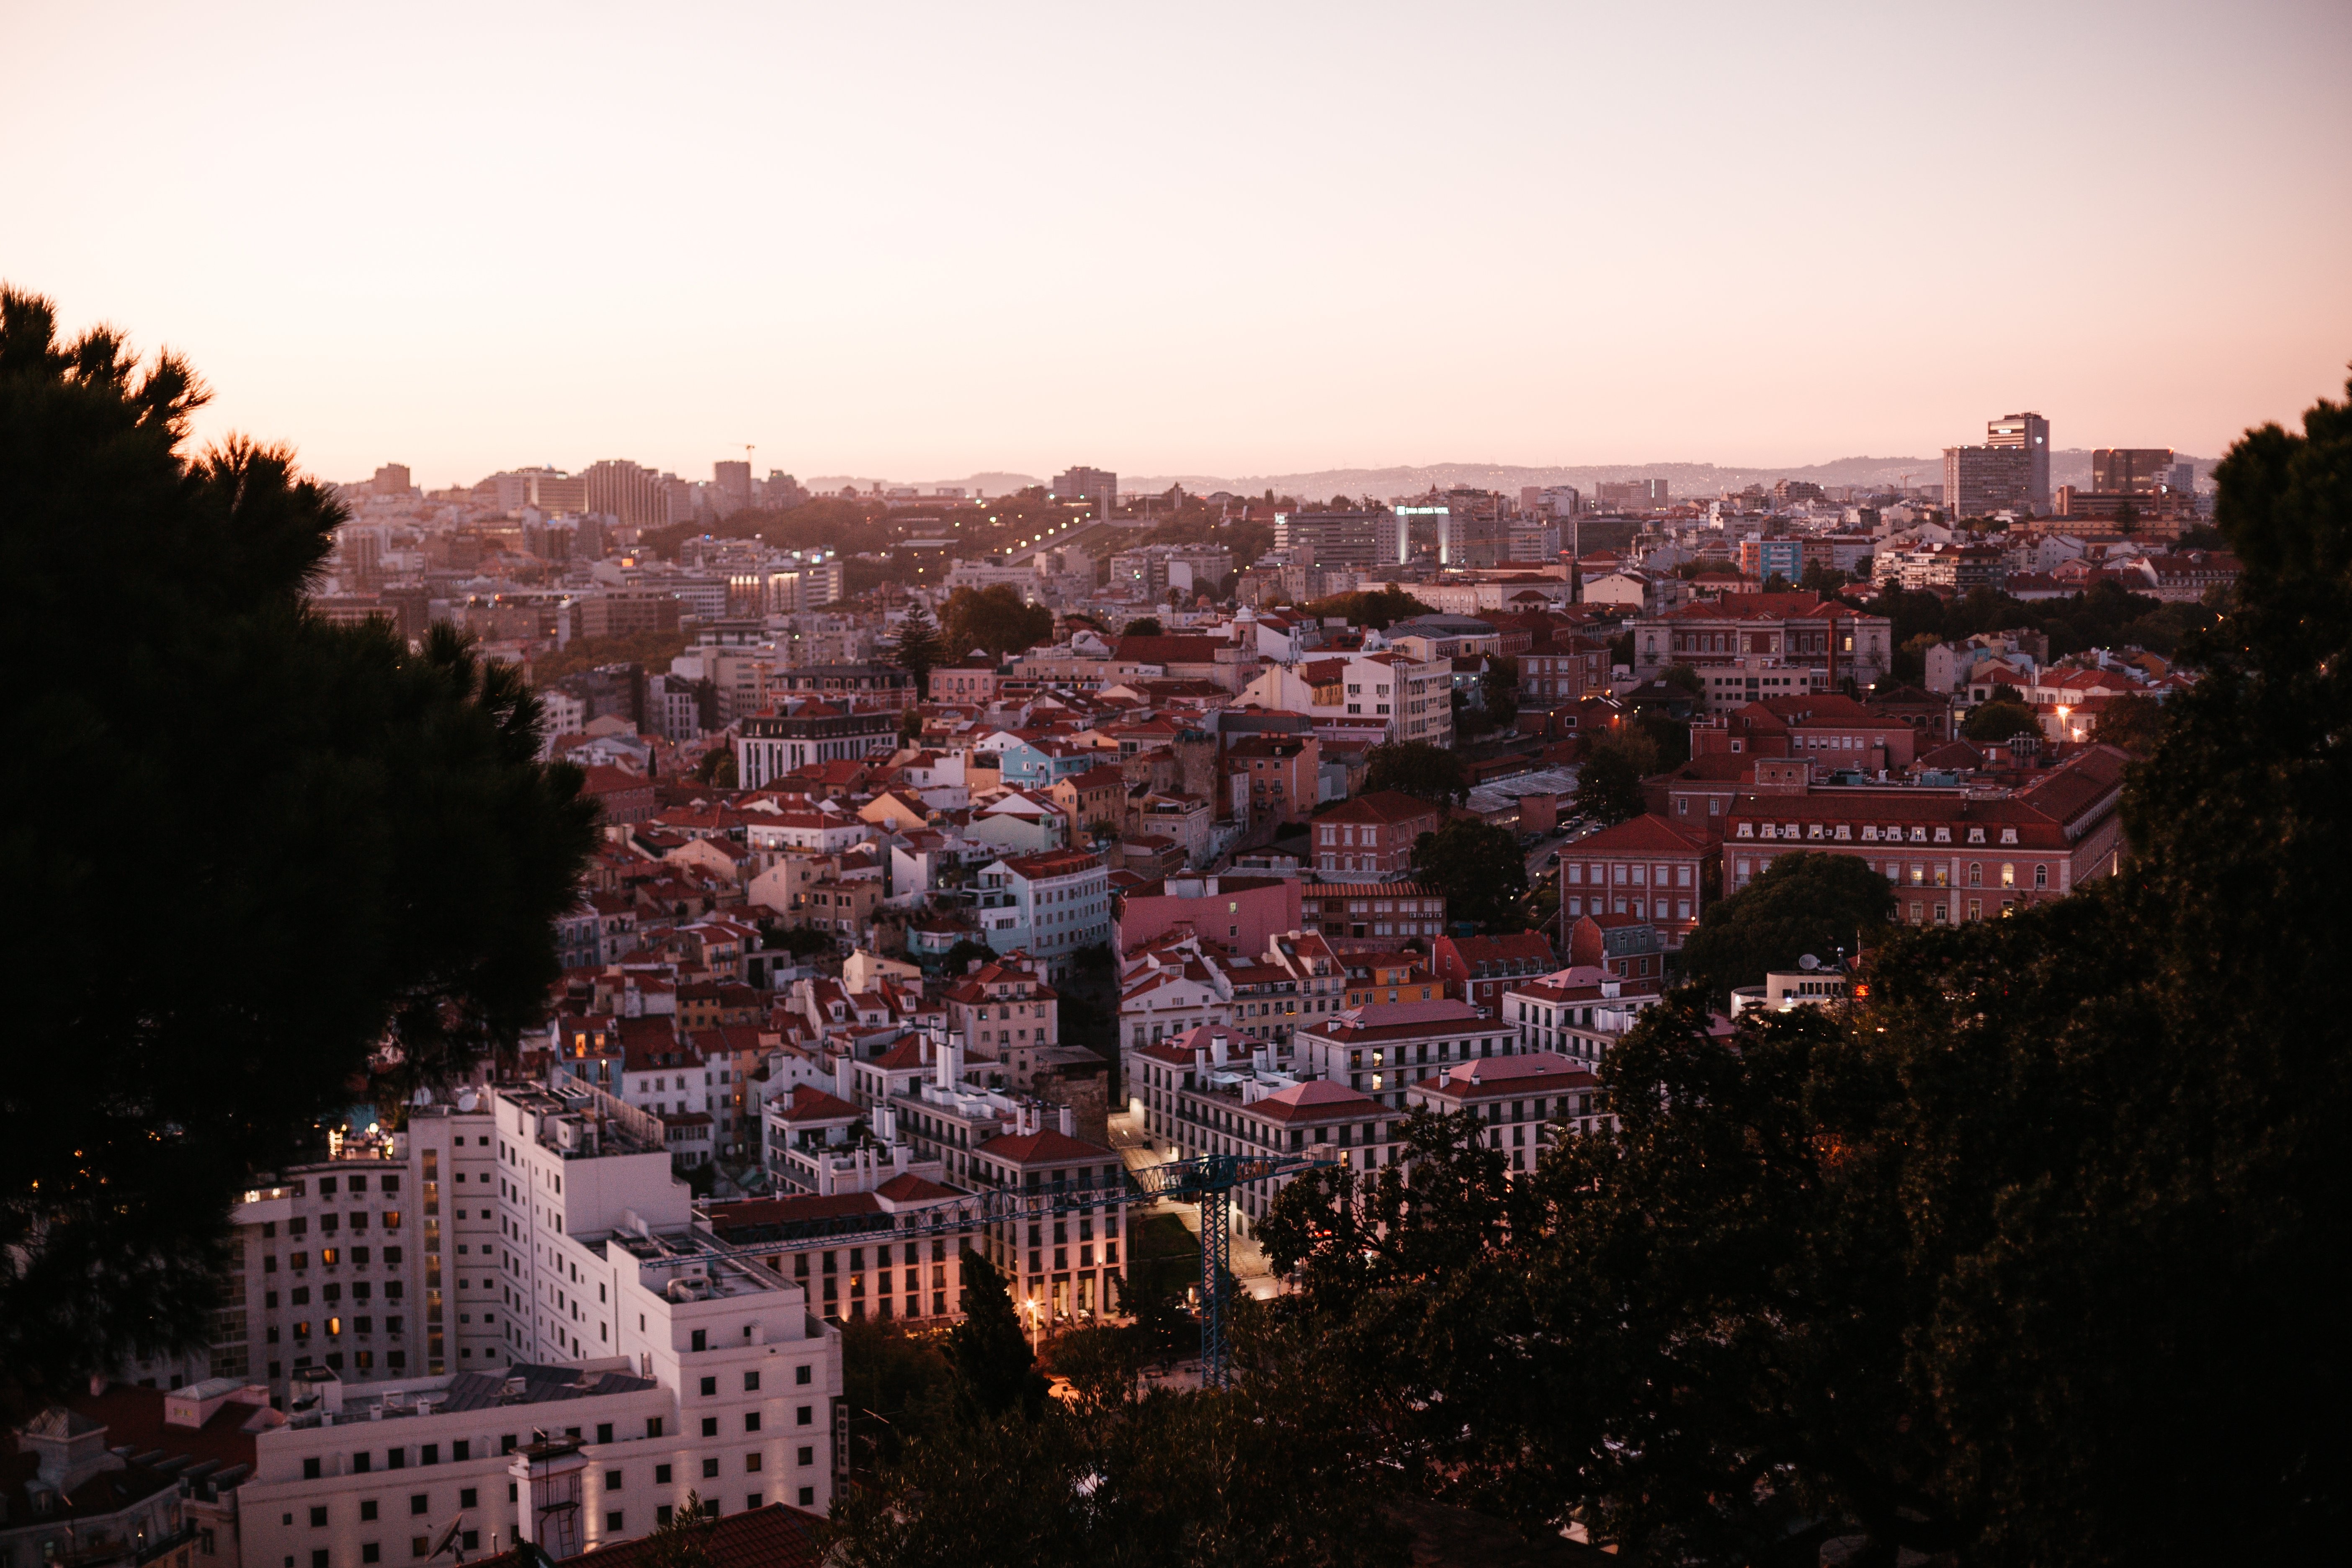 Vista del horizonte de la ciudad de Lisboa y el atardecer enmarcado por árboles foto 